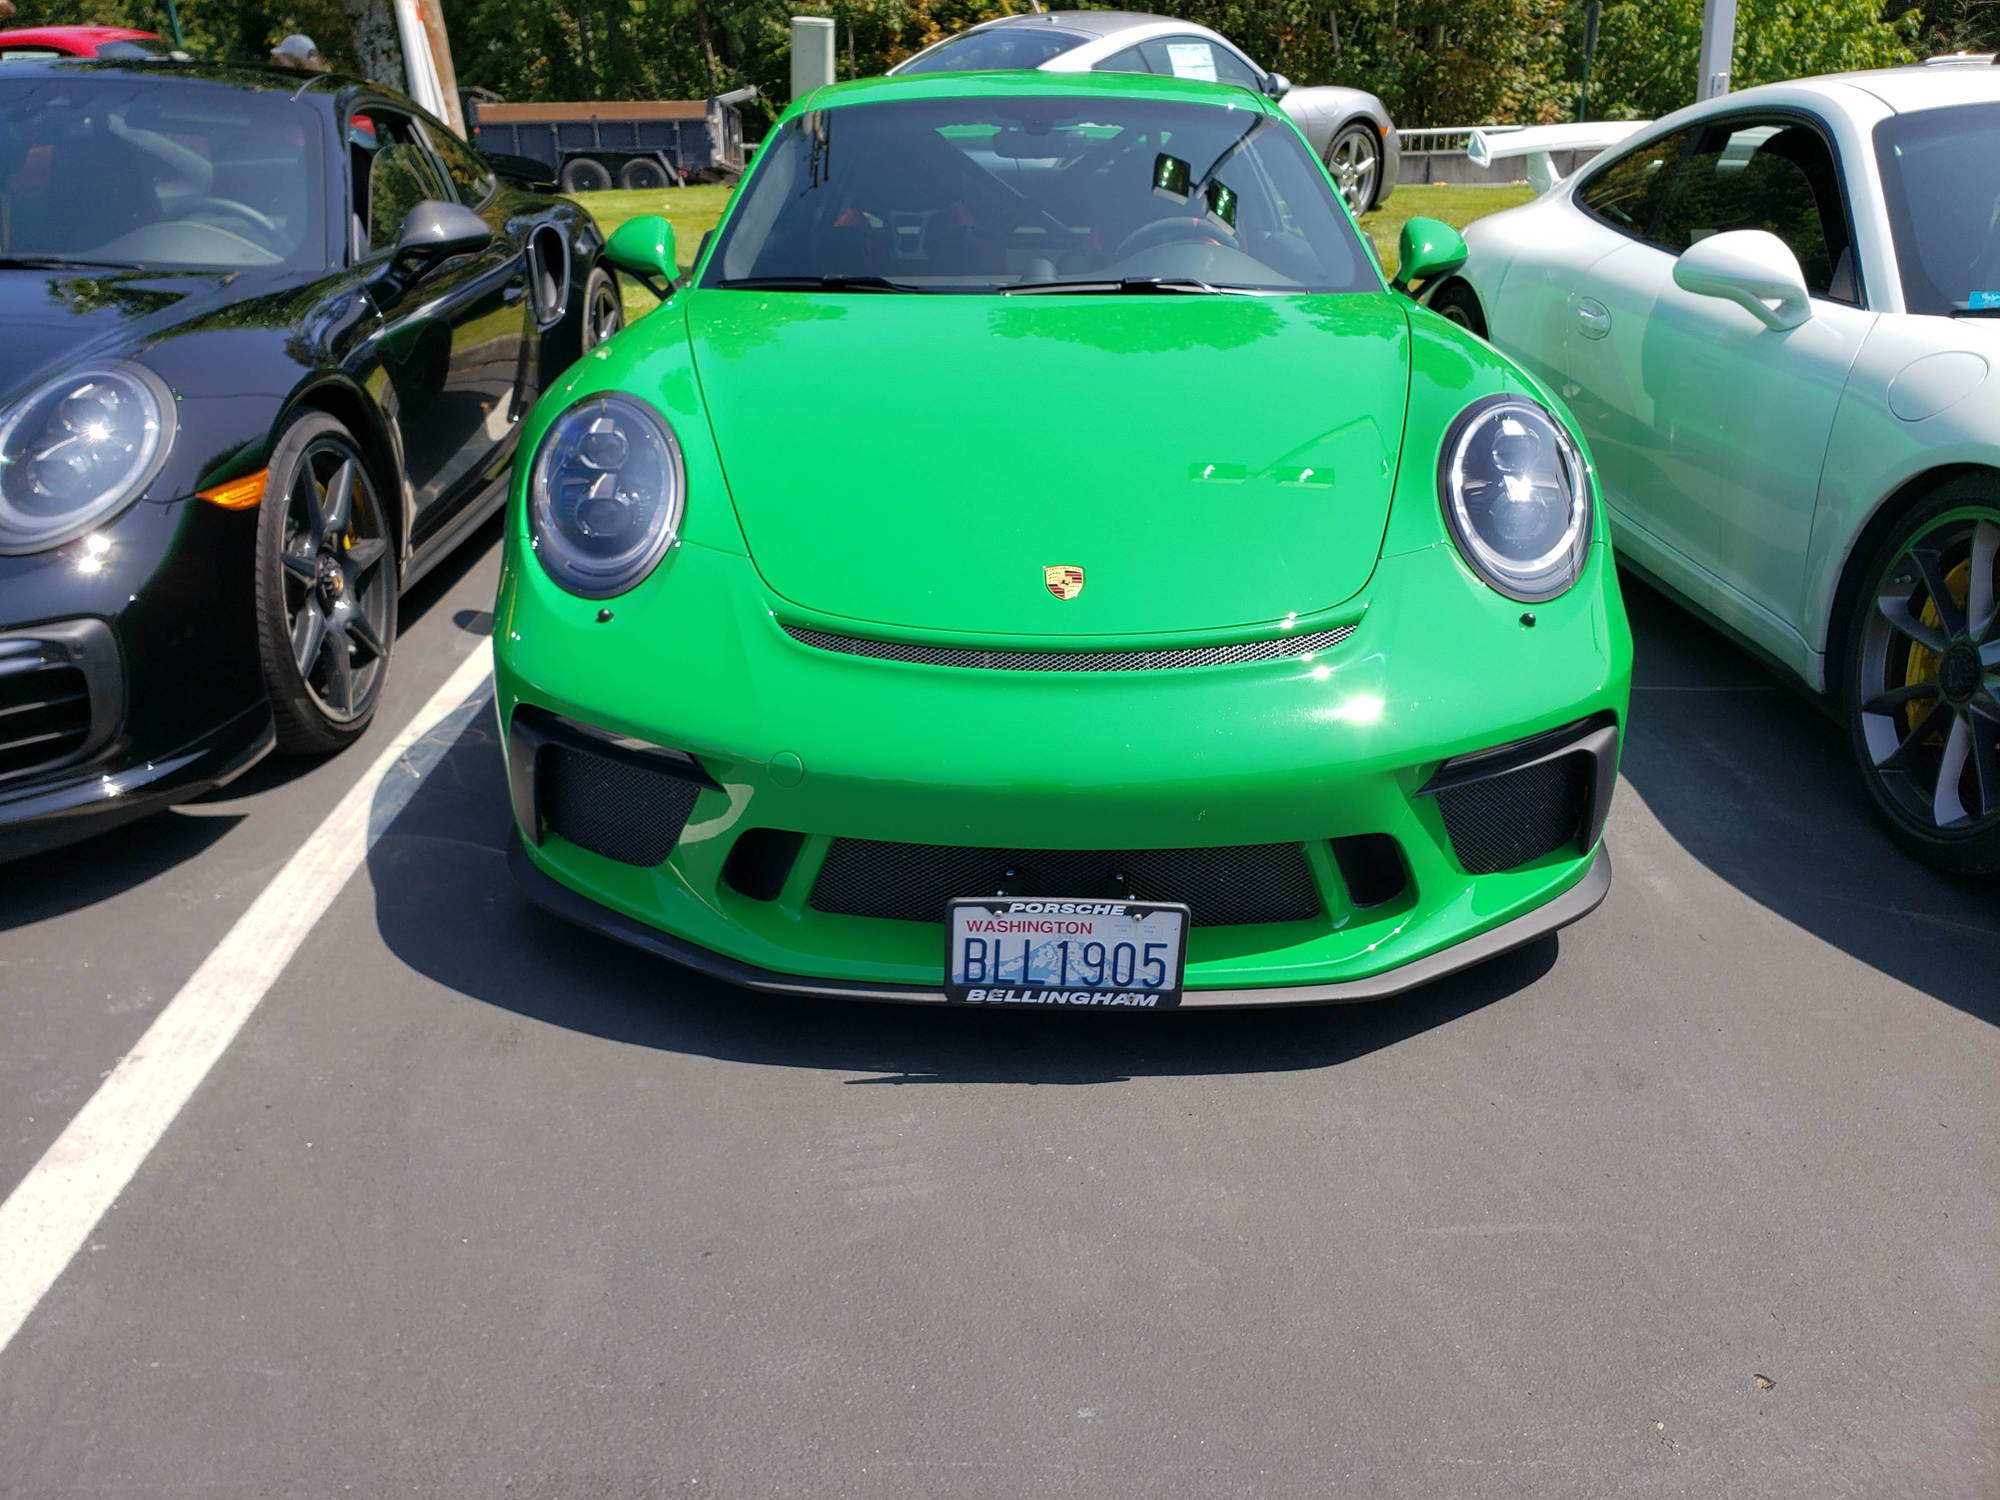 Python Green color exterior - Page 10 - Rennlist - Porsche Discussion Forums